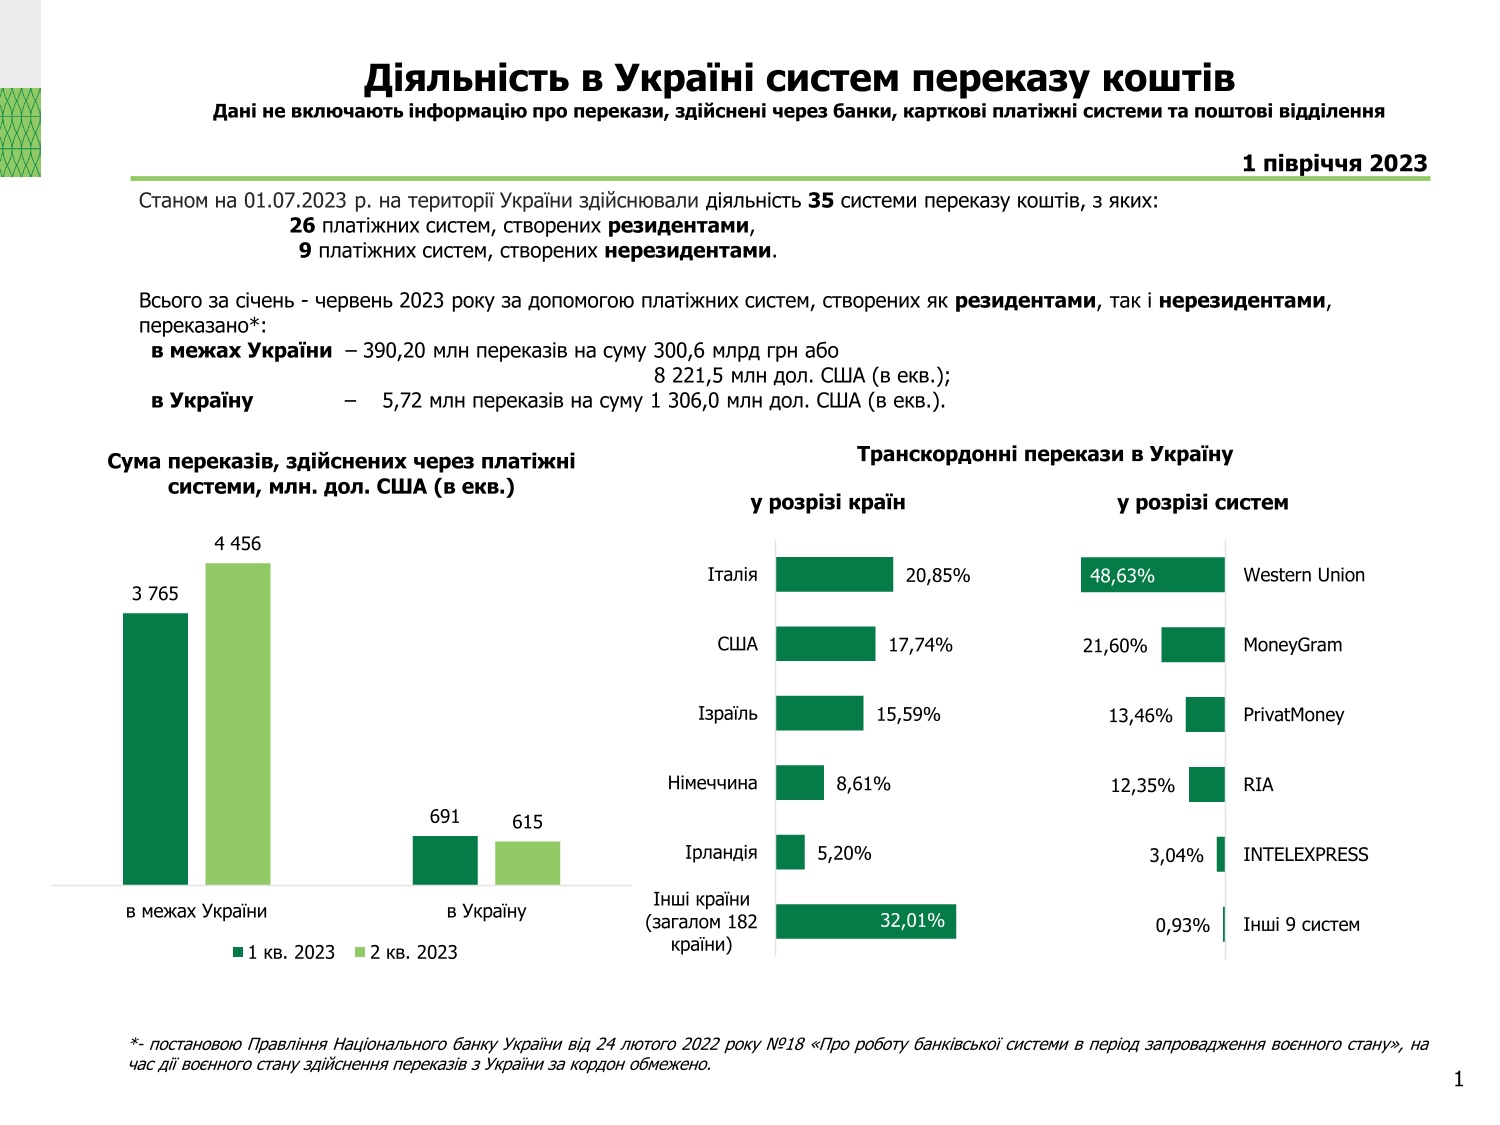 Діяльність в Україні платіжних систем, І півріччя 2023 року